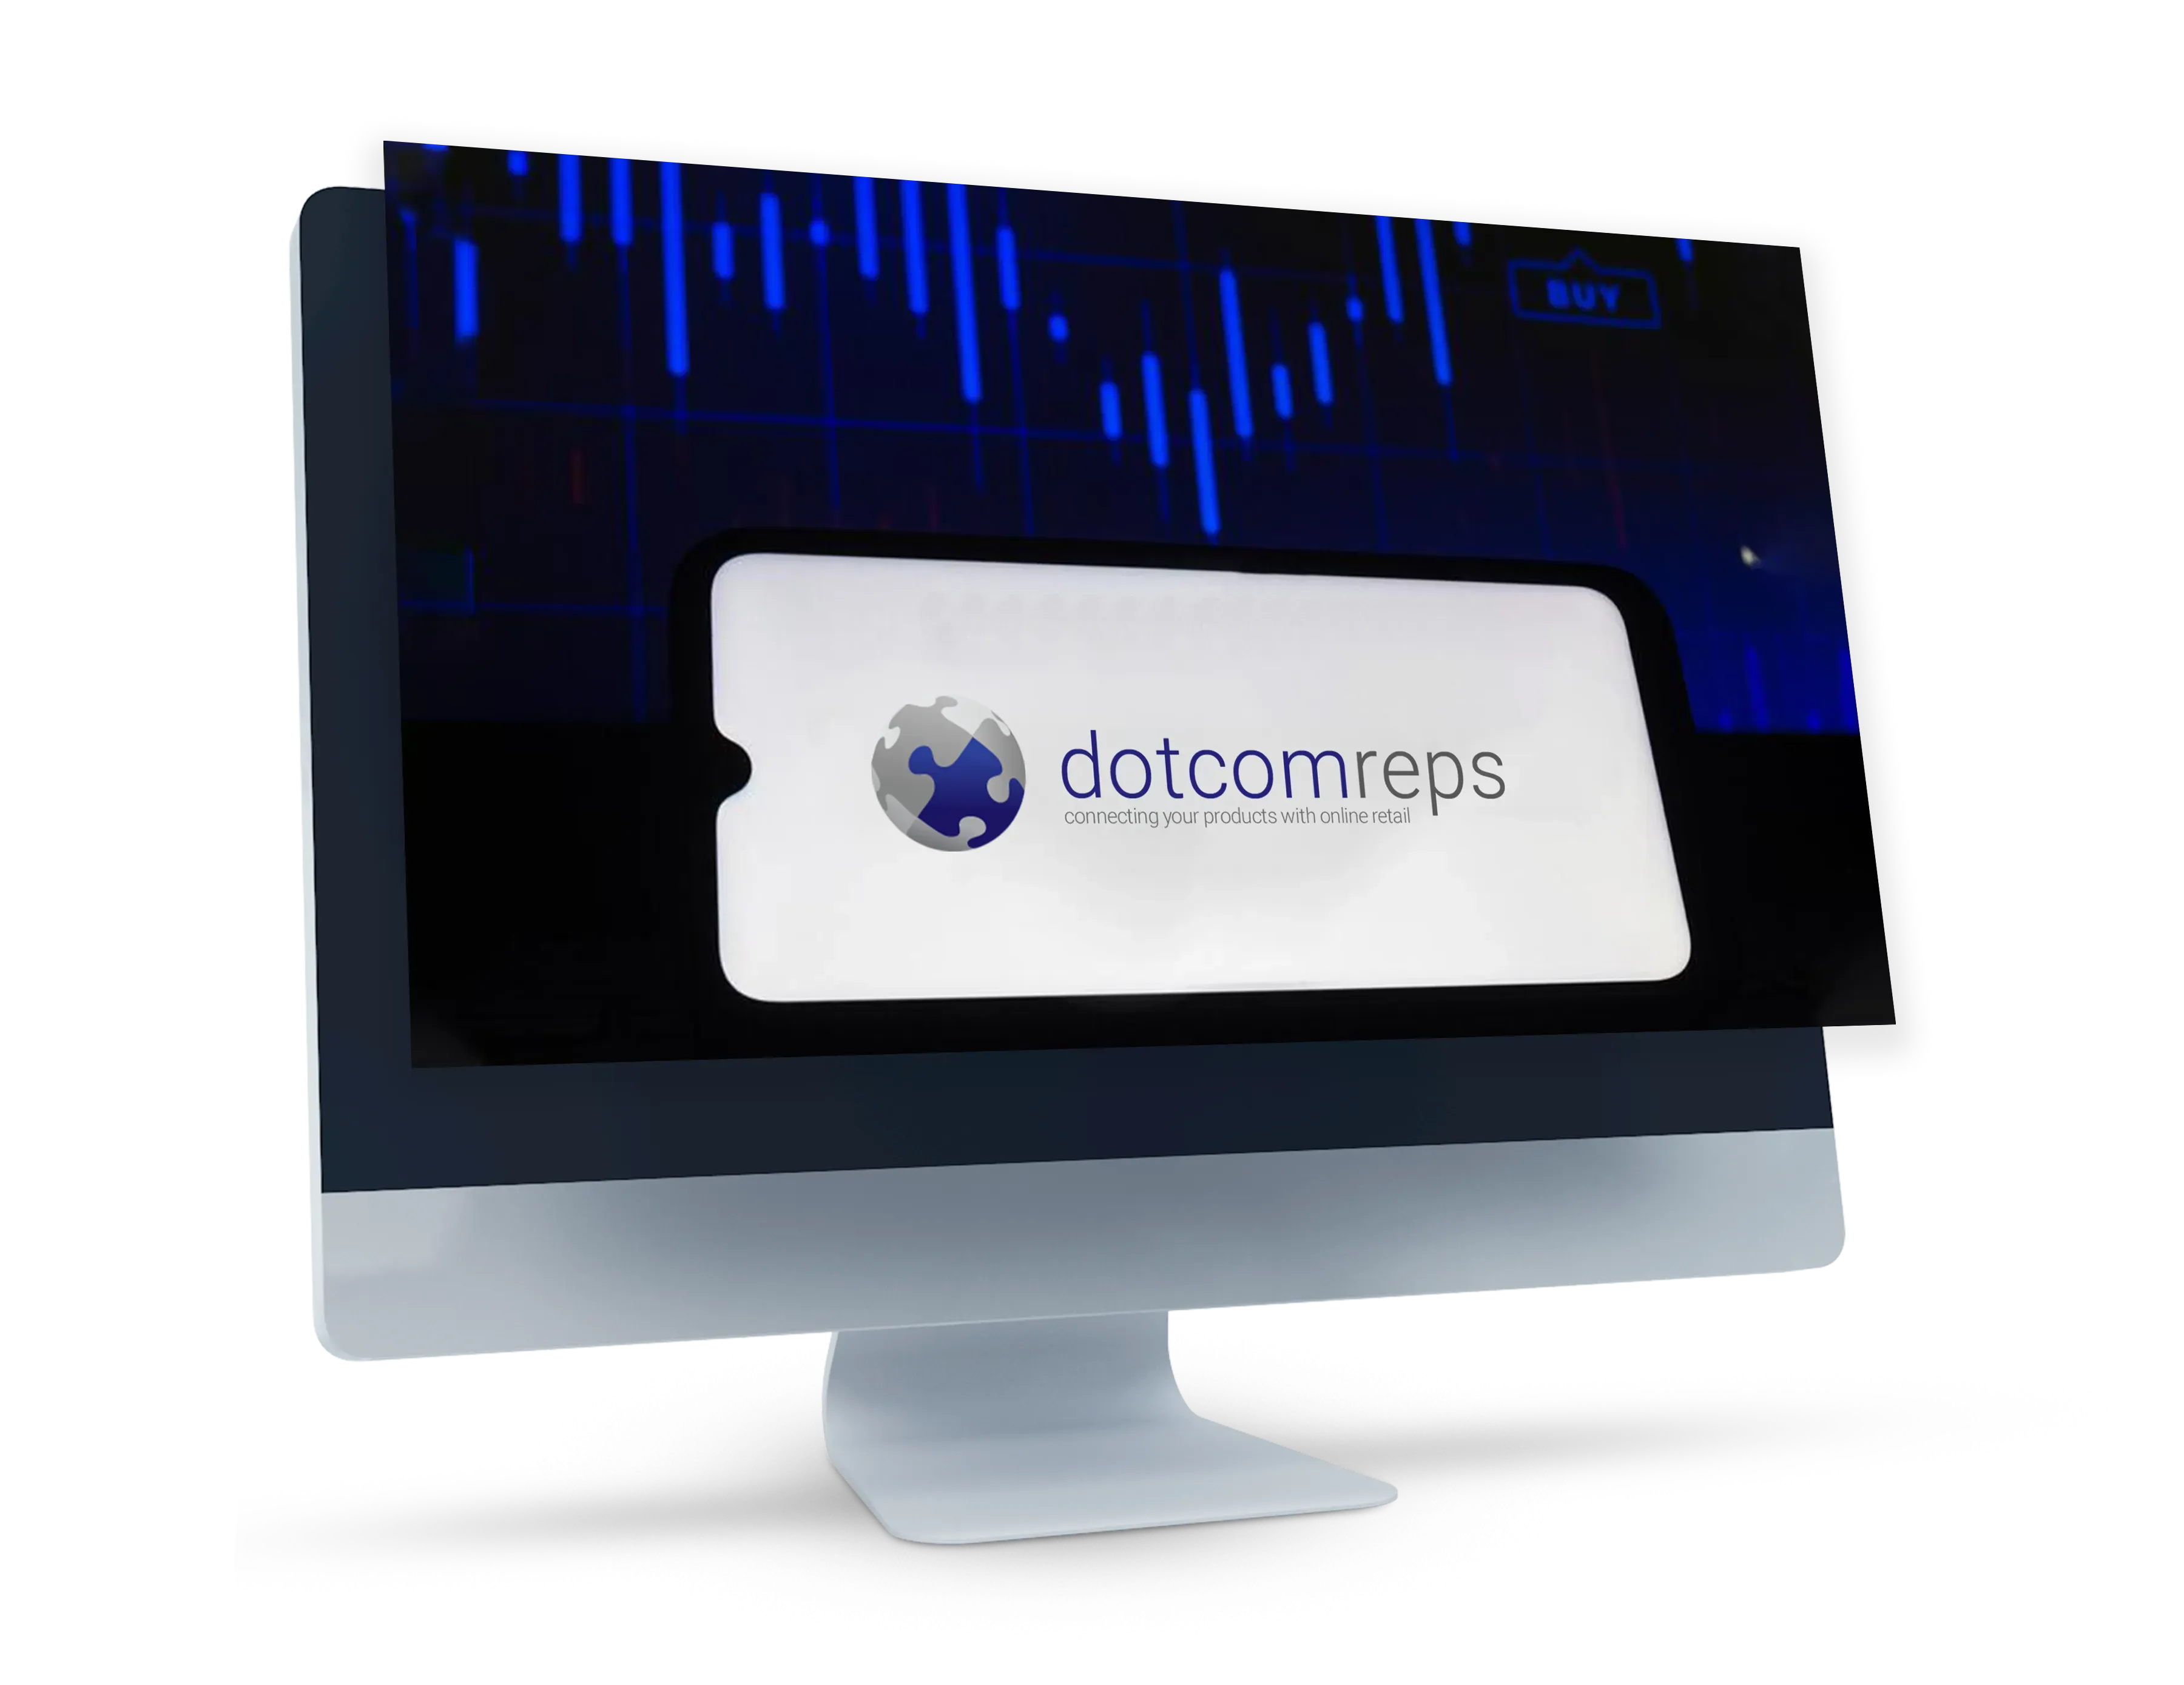 DotcomReps logo on computer screen